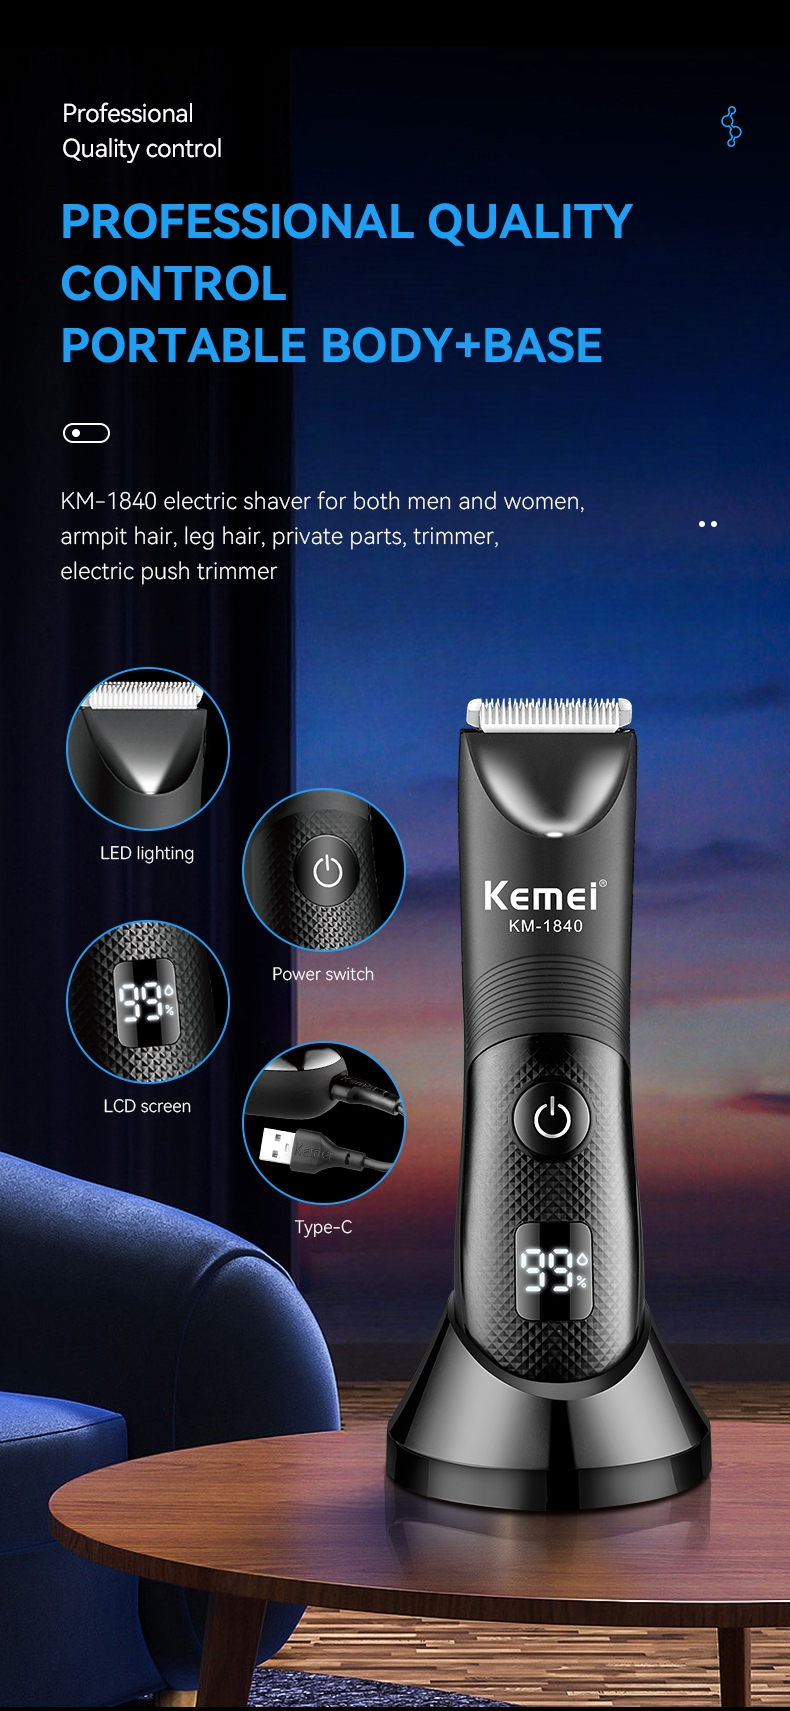 ماكينة حلاقه الاماكن الحساسه للرجال كيمي Kemei Electric Body Hair Trimmer For Men KM-1840